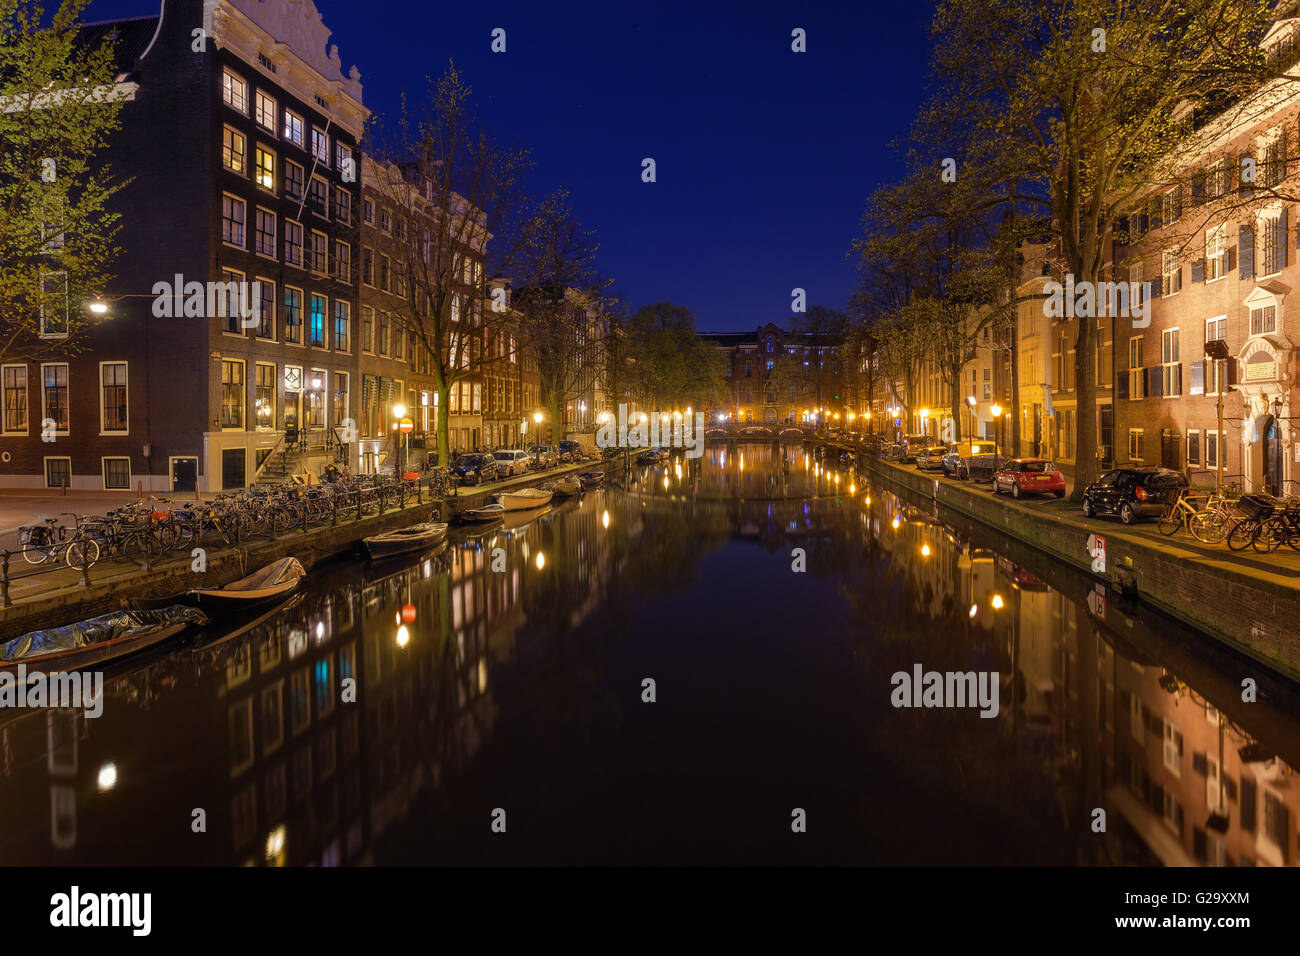 Schöne Nacht Stadtbild mit traditionellen alten Häusern in Amsterdam, Niederlande. Die Lichter der Stadt in Wasser mit blauer Himmel wider. Stockfoto